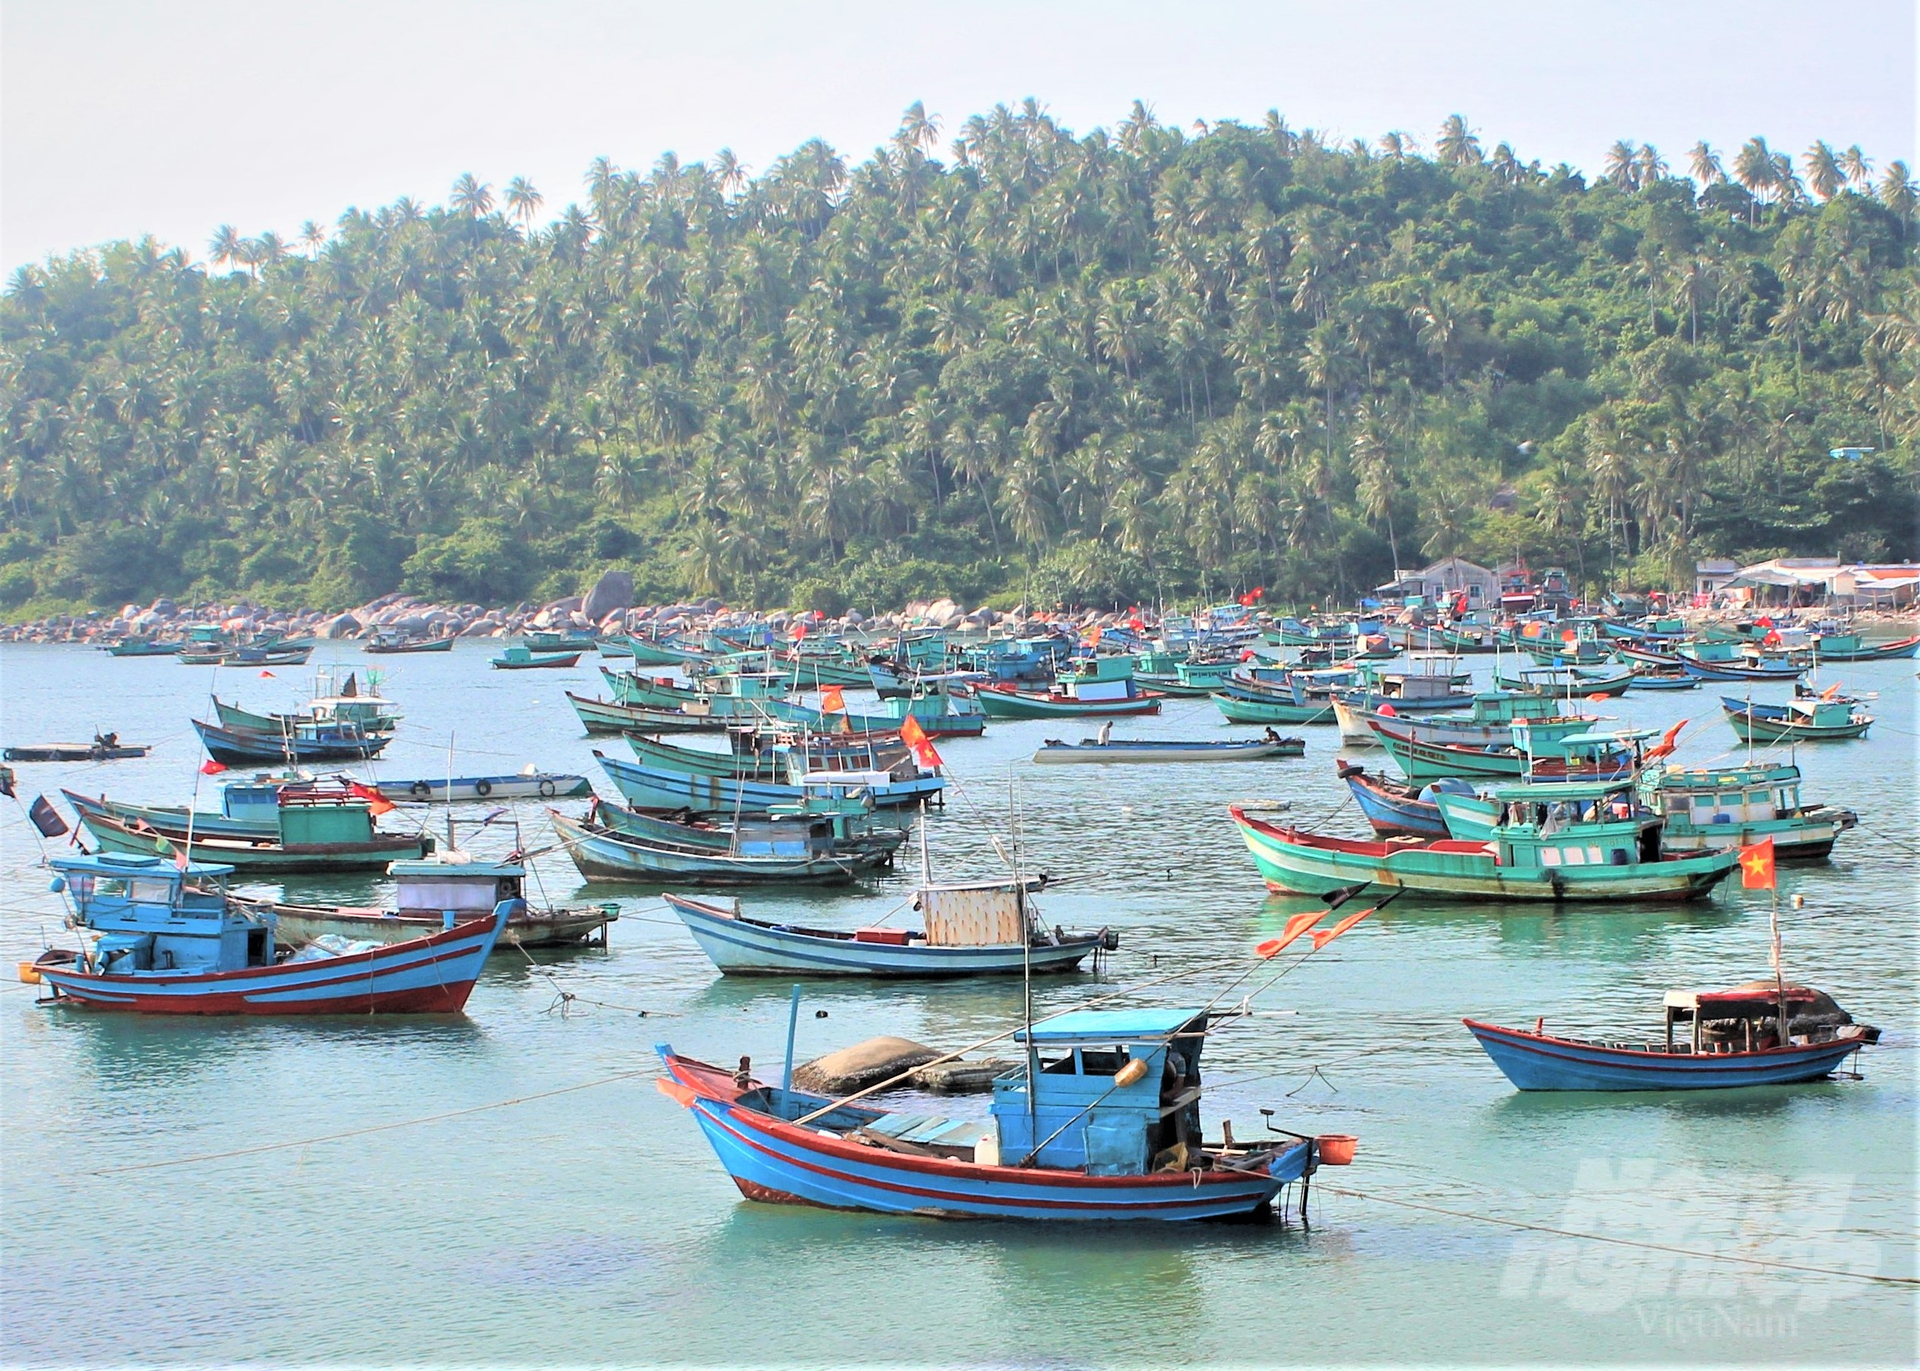 Qua rà soát, xác minh, đến cuối tháng 4/2023 trên địa bàn tỉnh Kiên Giang có 1.006 tàu cá hết hạn Giấy chứng nhận an toàn kỹ thuật tàu cá và Giấy phép khai thác thủy sản trên 2 năm, thuộc thuộc diện mất tích sẽ bị xóa đăng ký. Ảnh: Trung Chánh.